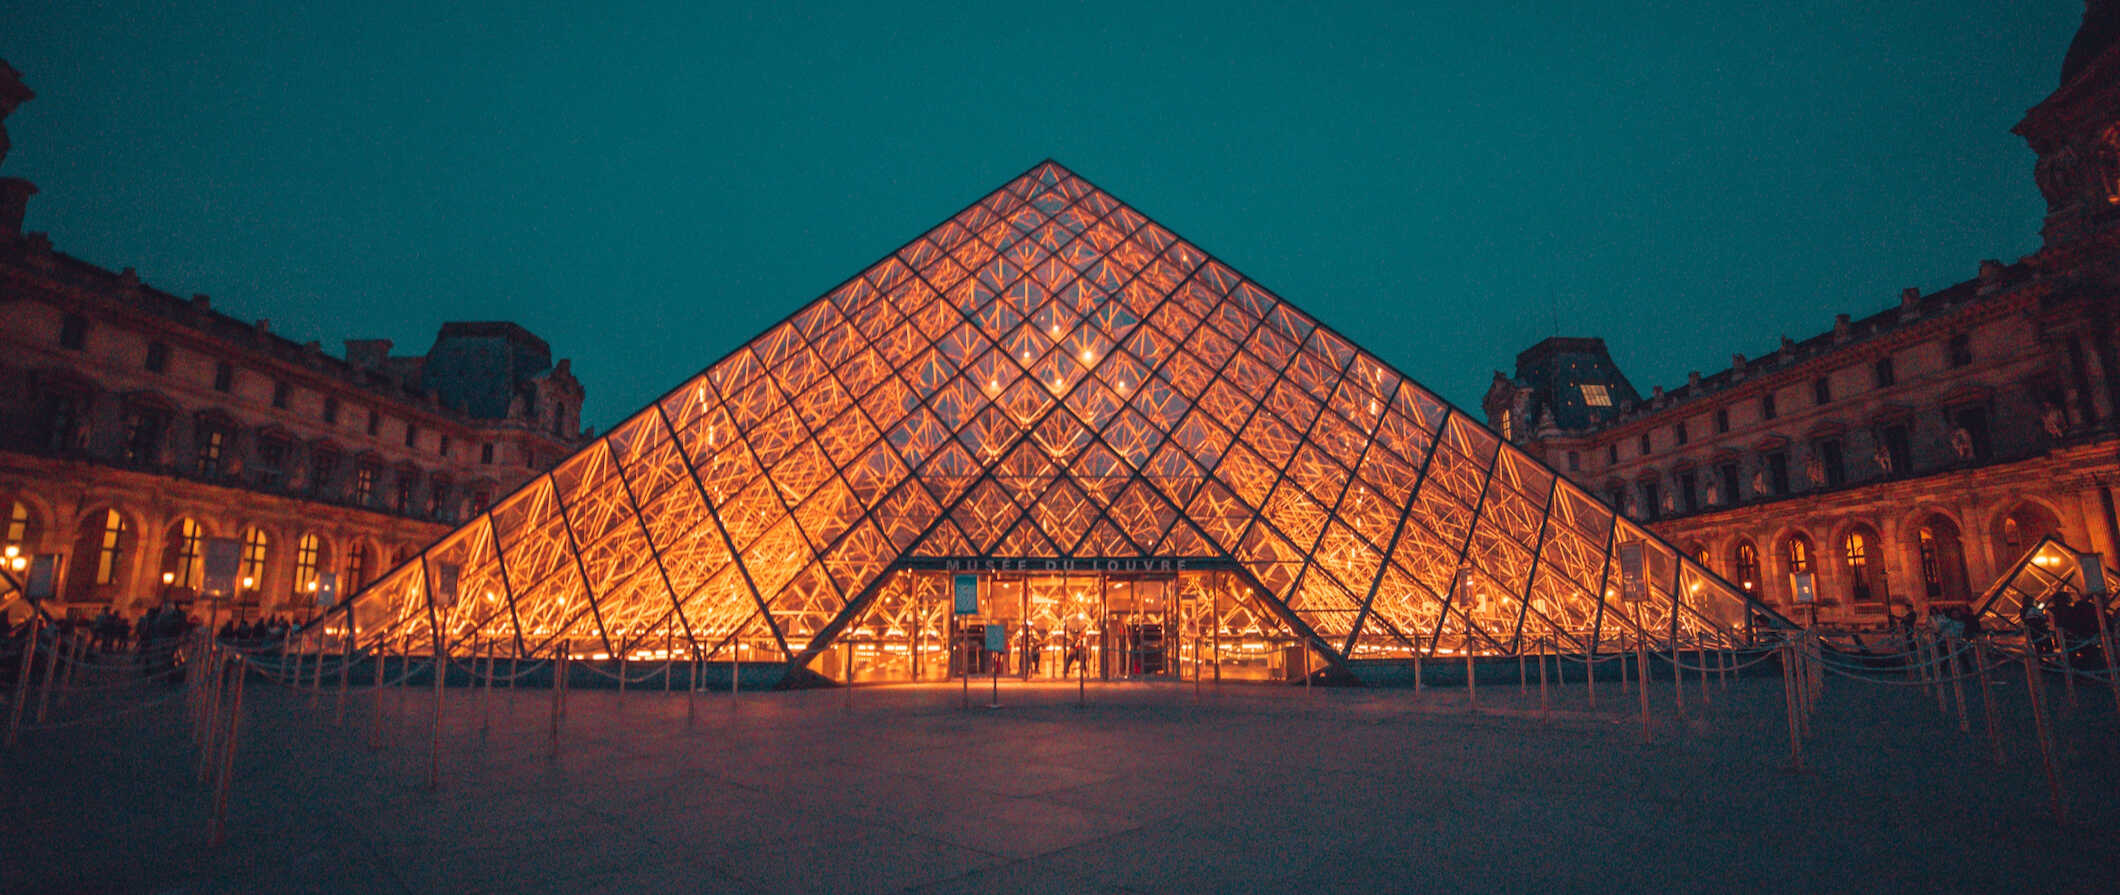 Piramida Luvru s-a luminat noaptea la Paris, Franta